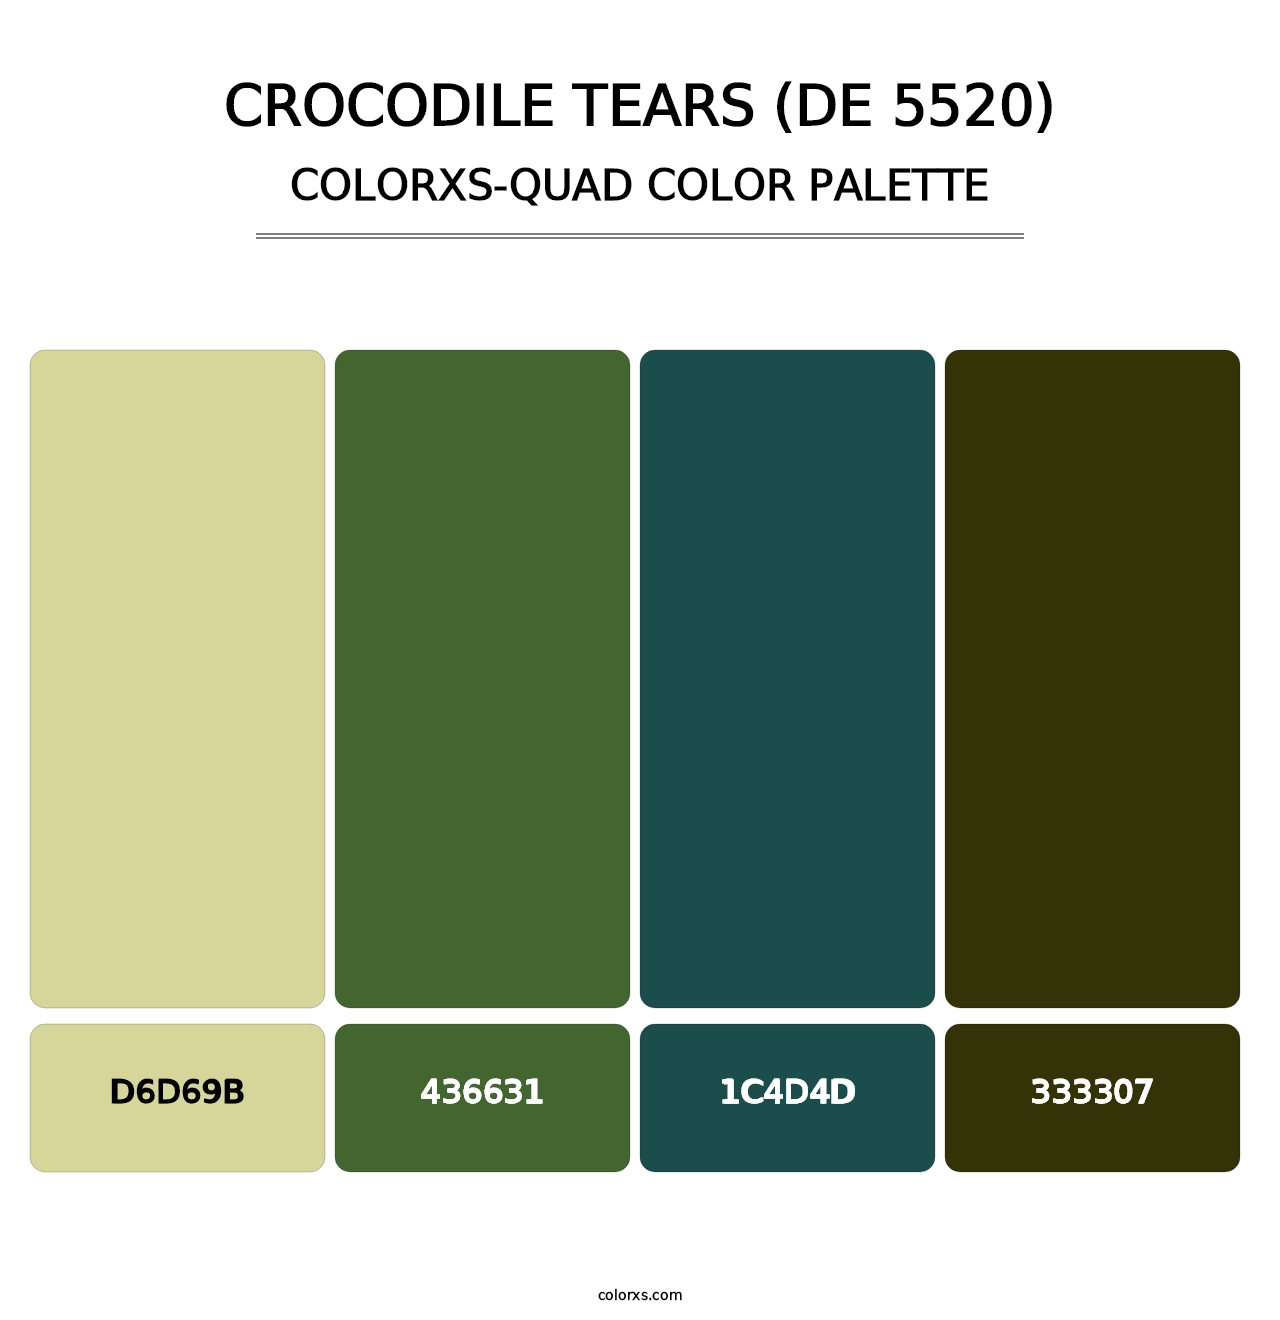 Crocodile Tears (DE 5520) - Colorxs Quad Palette